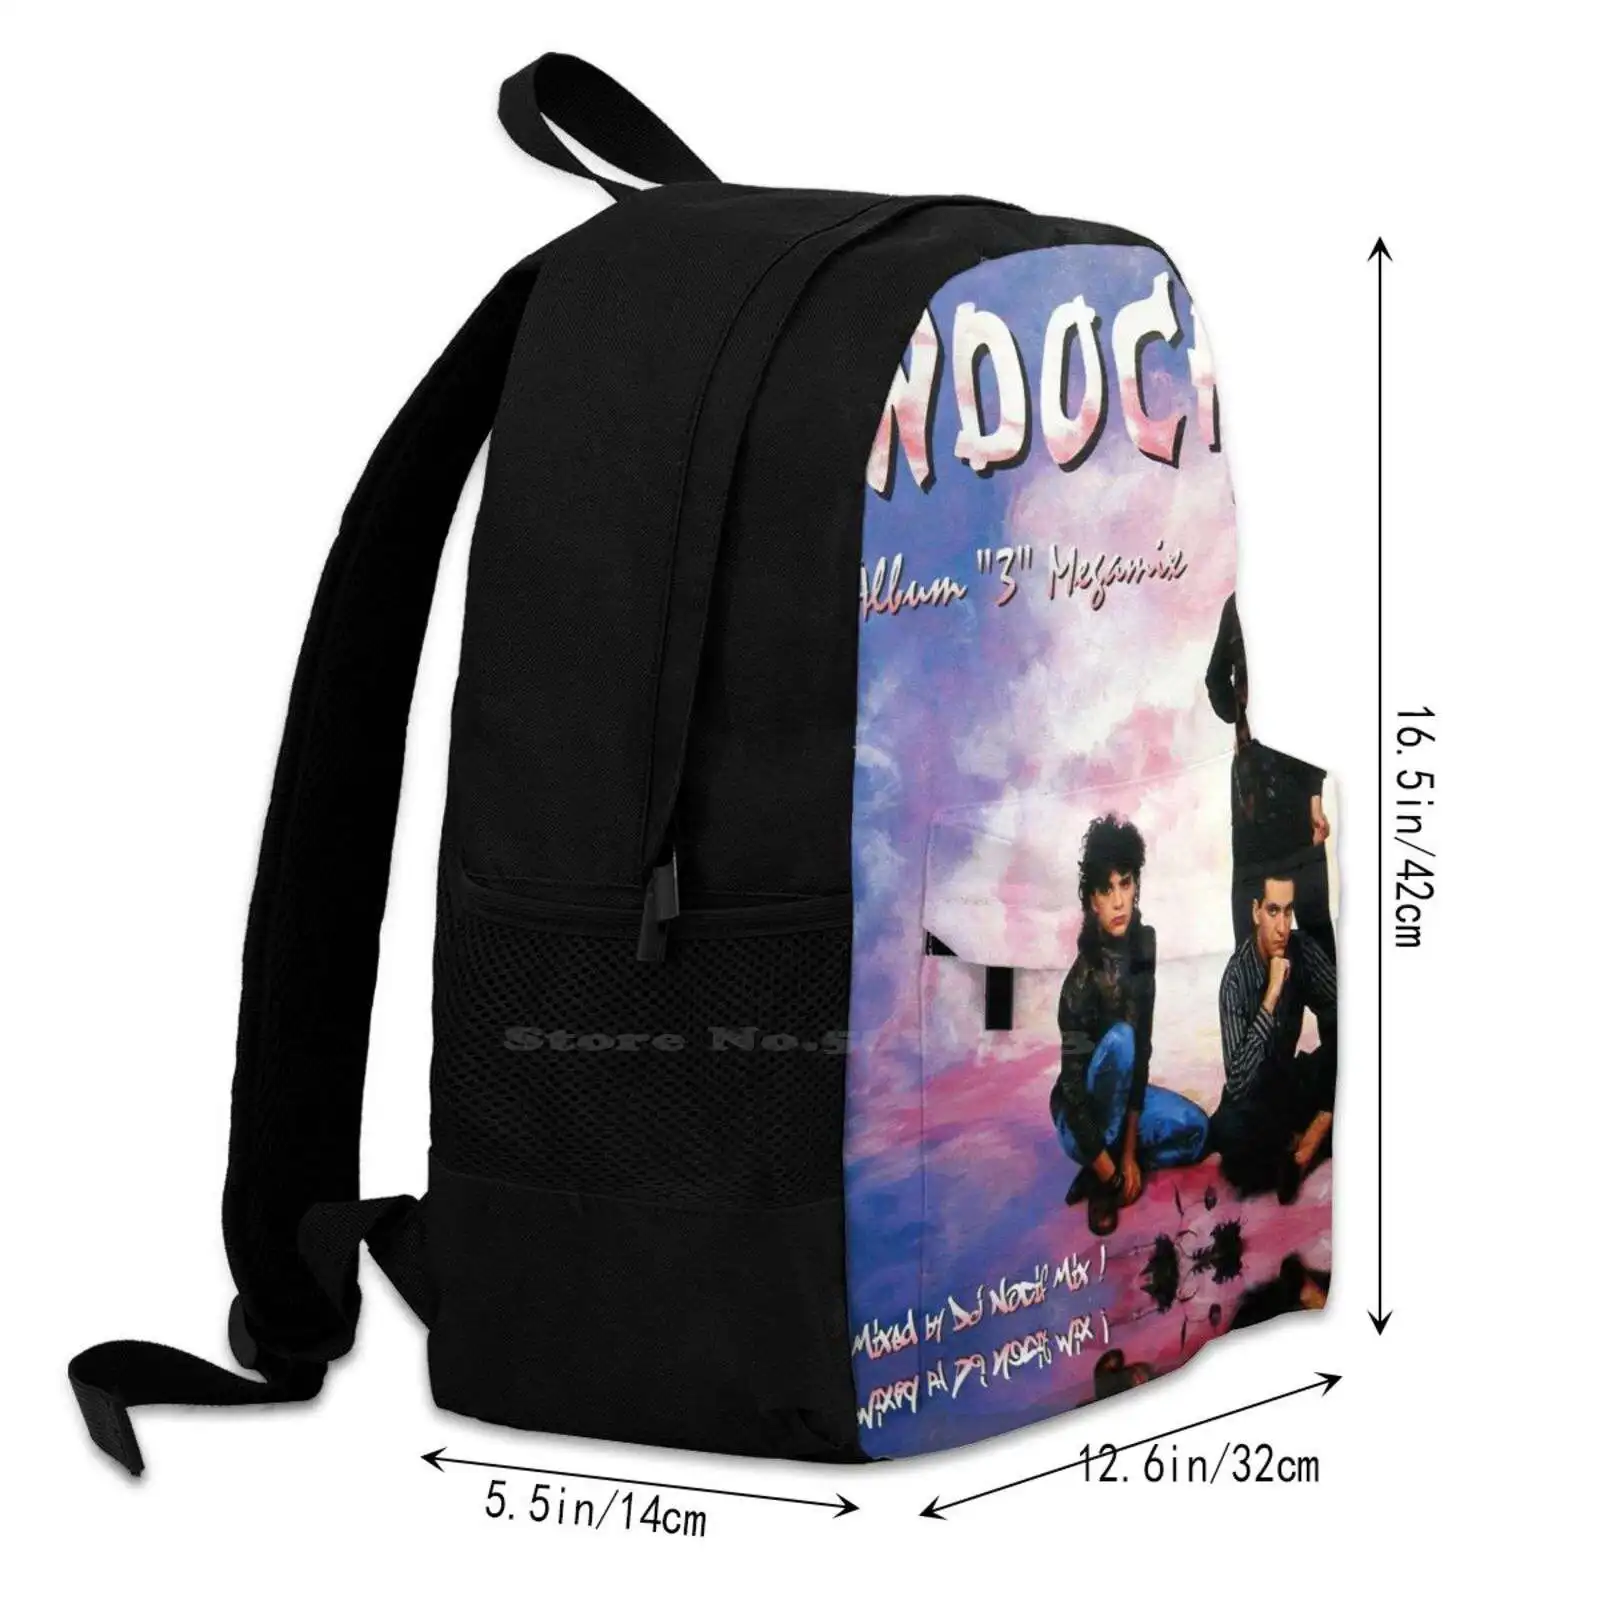 Indochine 3 Megamix 2021 Tiang Модный дорожный ноутбук, школьный рюкзак, сумка Indochine 3 Megamix 2021 Tiang Изображение 2